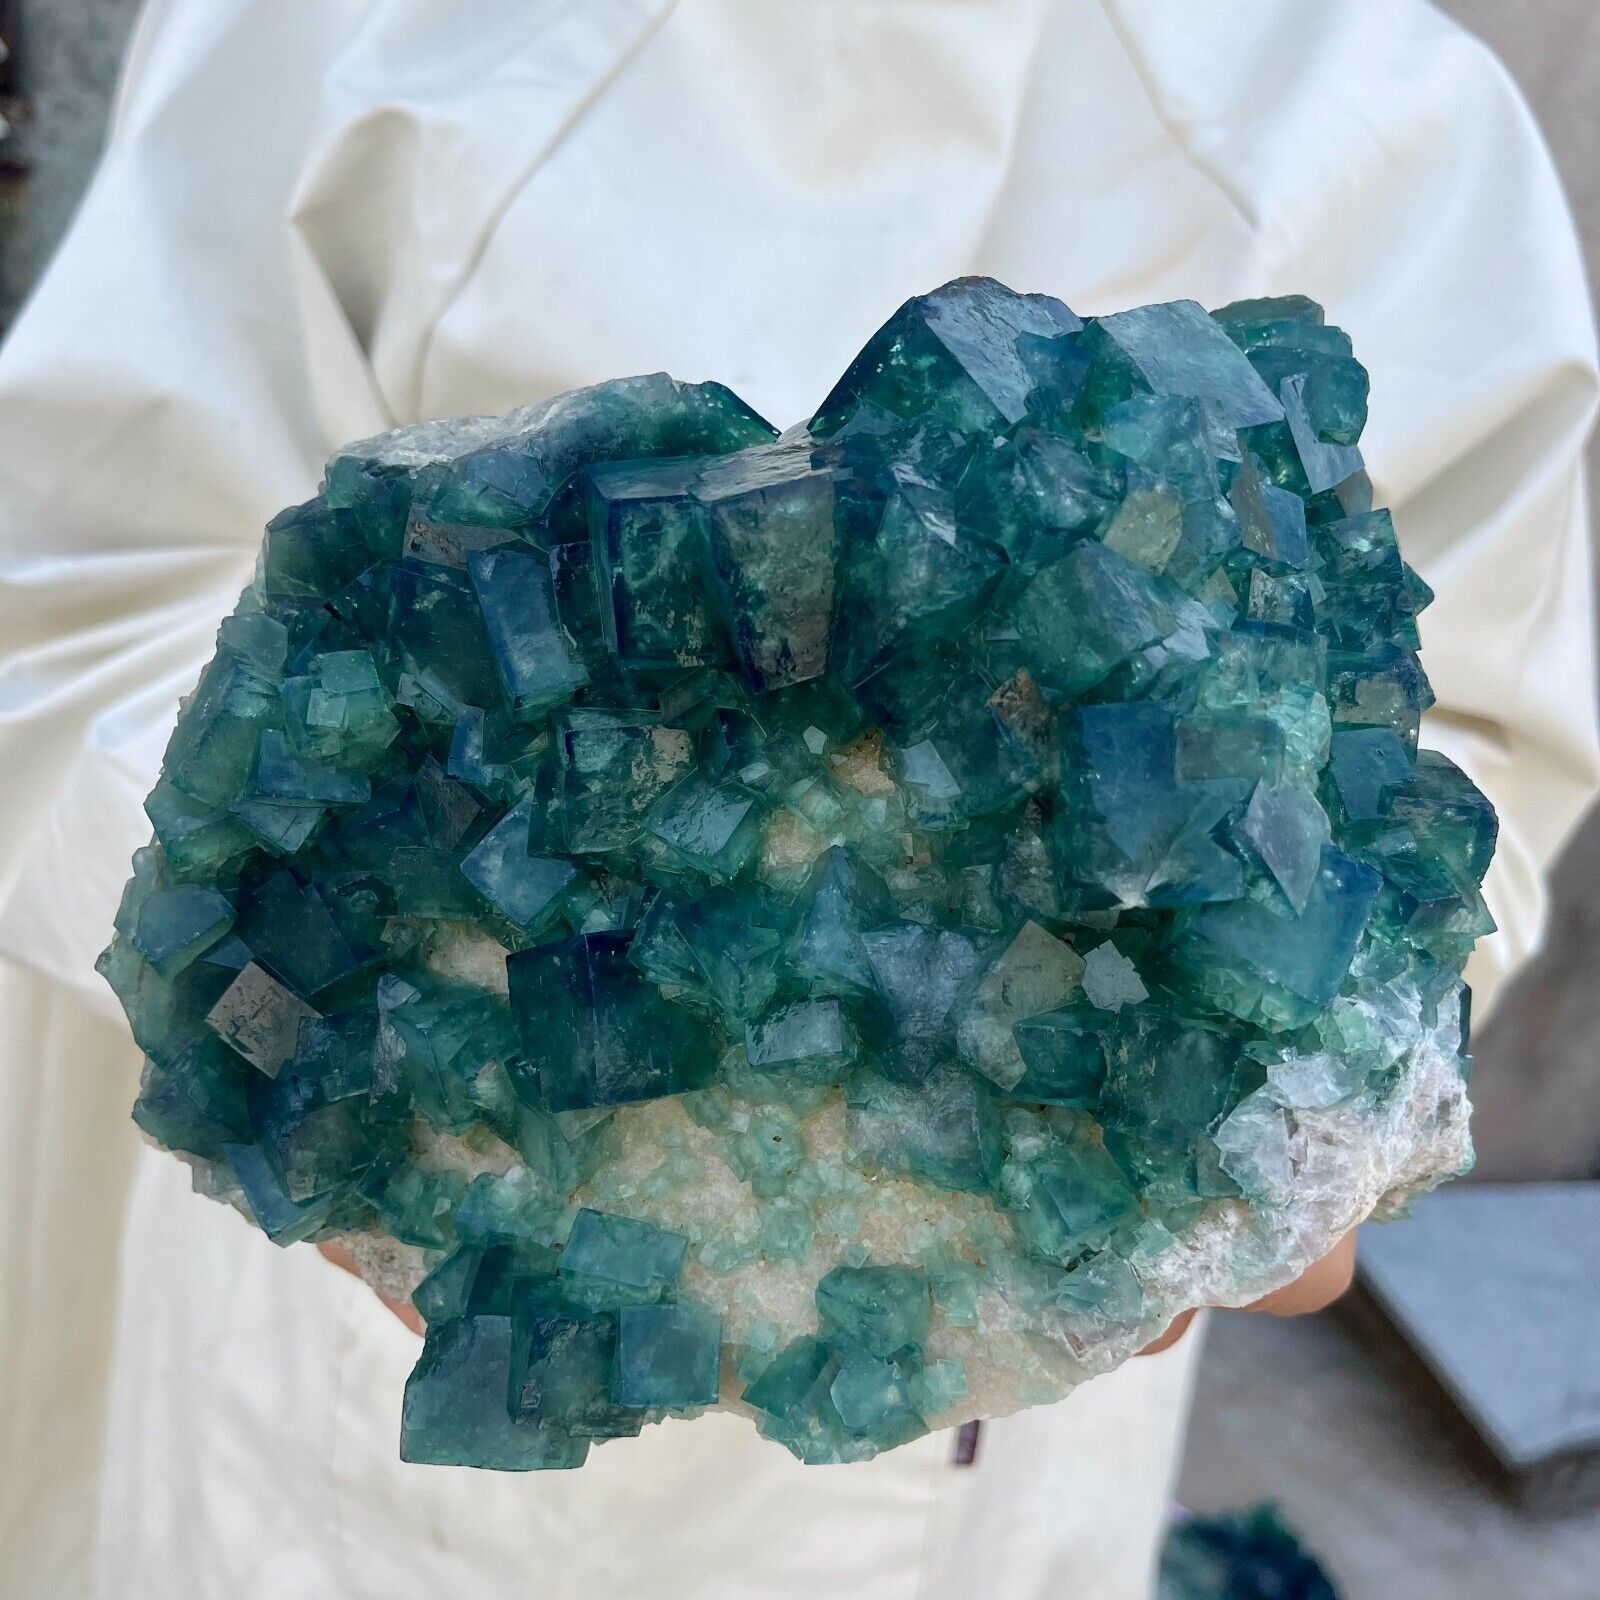 6.6lb Large NATURAL Green Cube FLUORITE Quartz Crystal Cluster Mineral Specimen